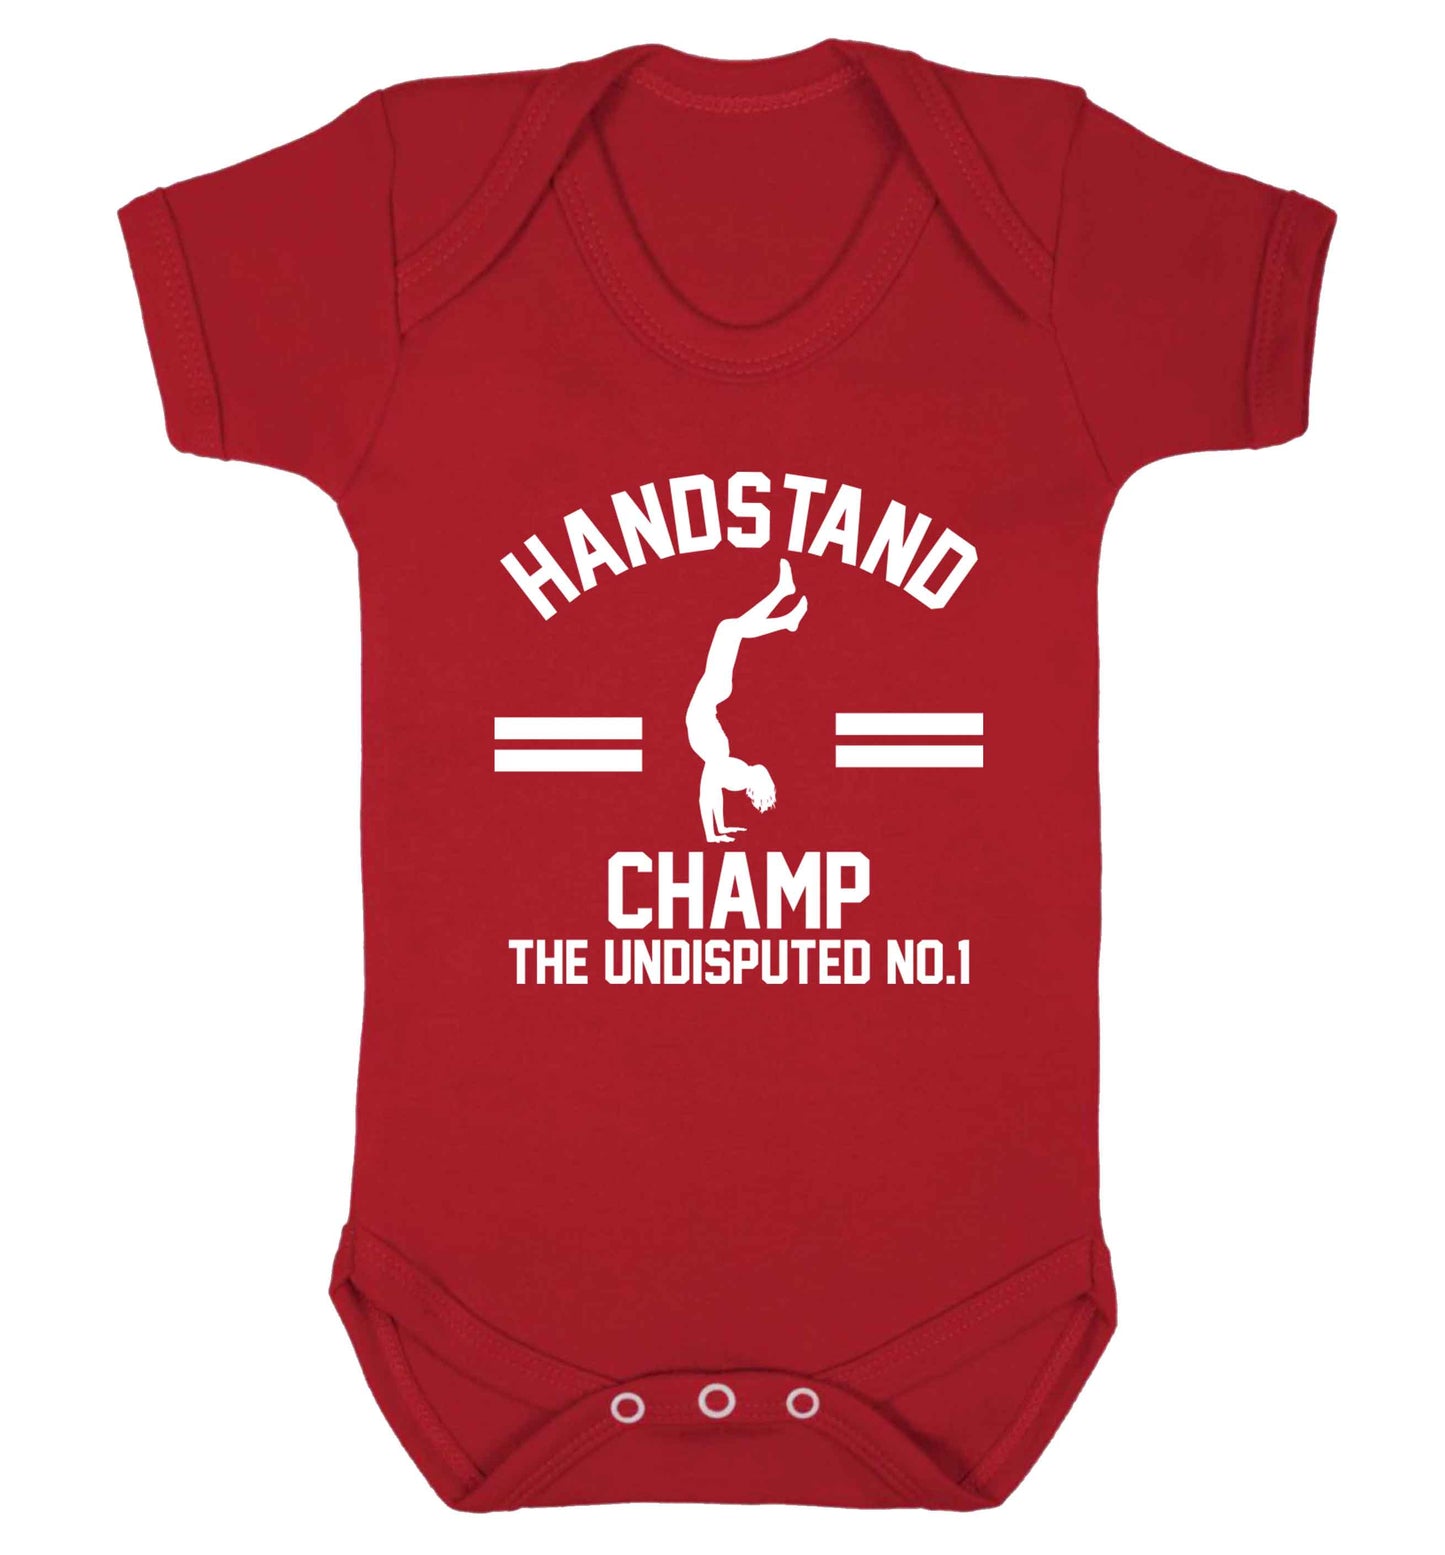 Undisputed handstand championship no.1  Baby Vest red 18-24 months